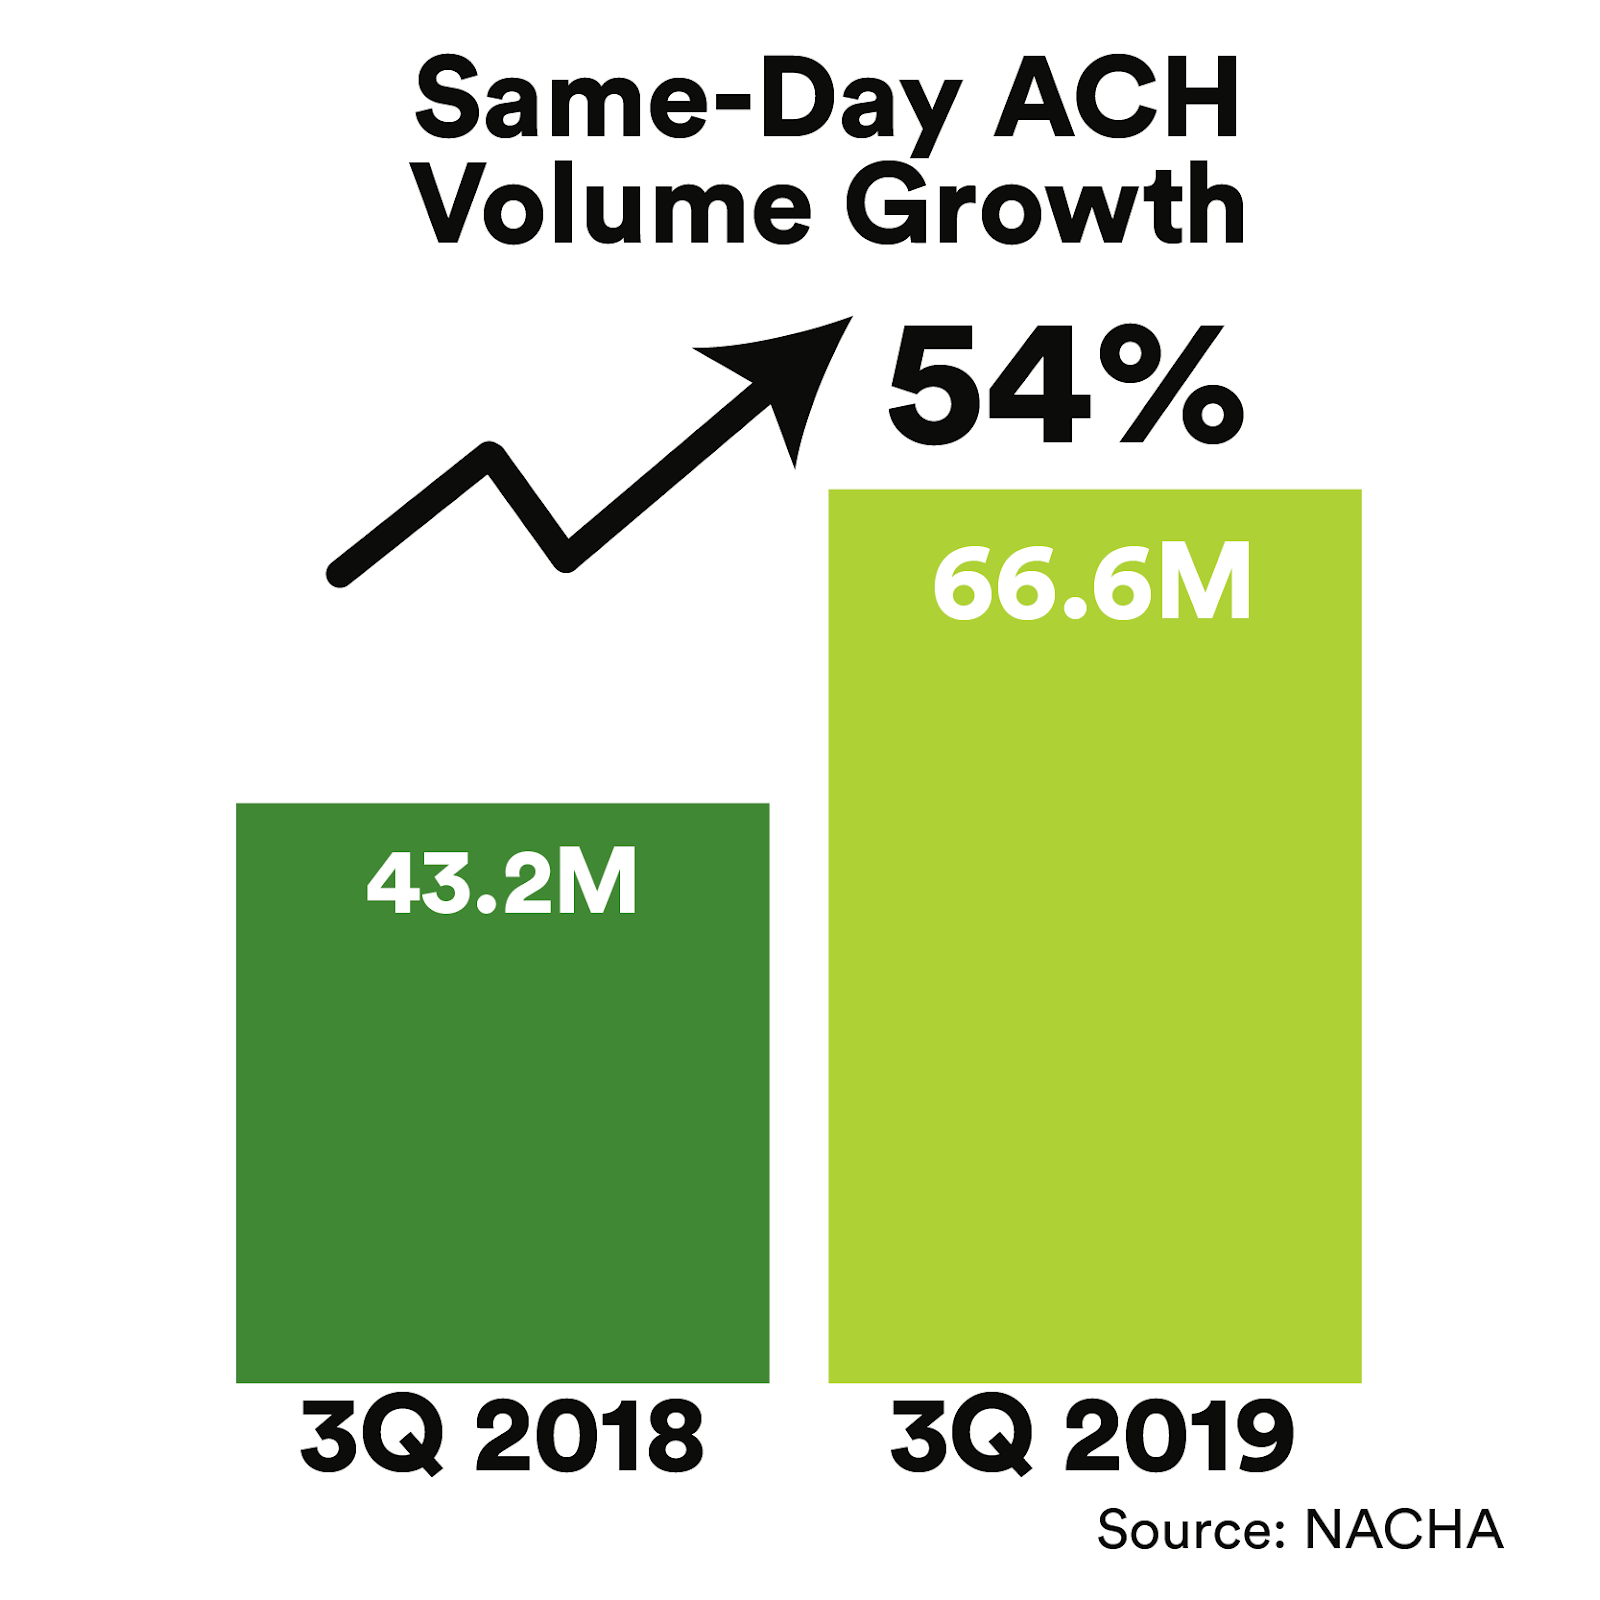 Same day ACH volume growth